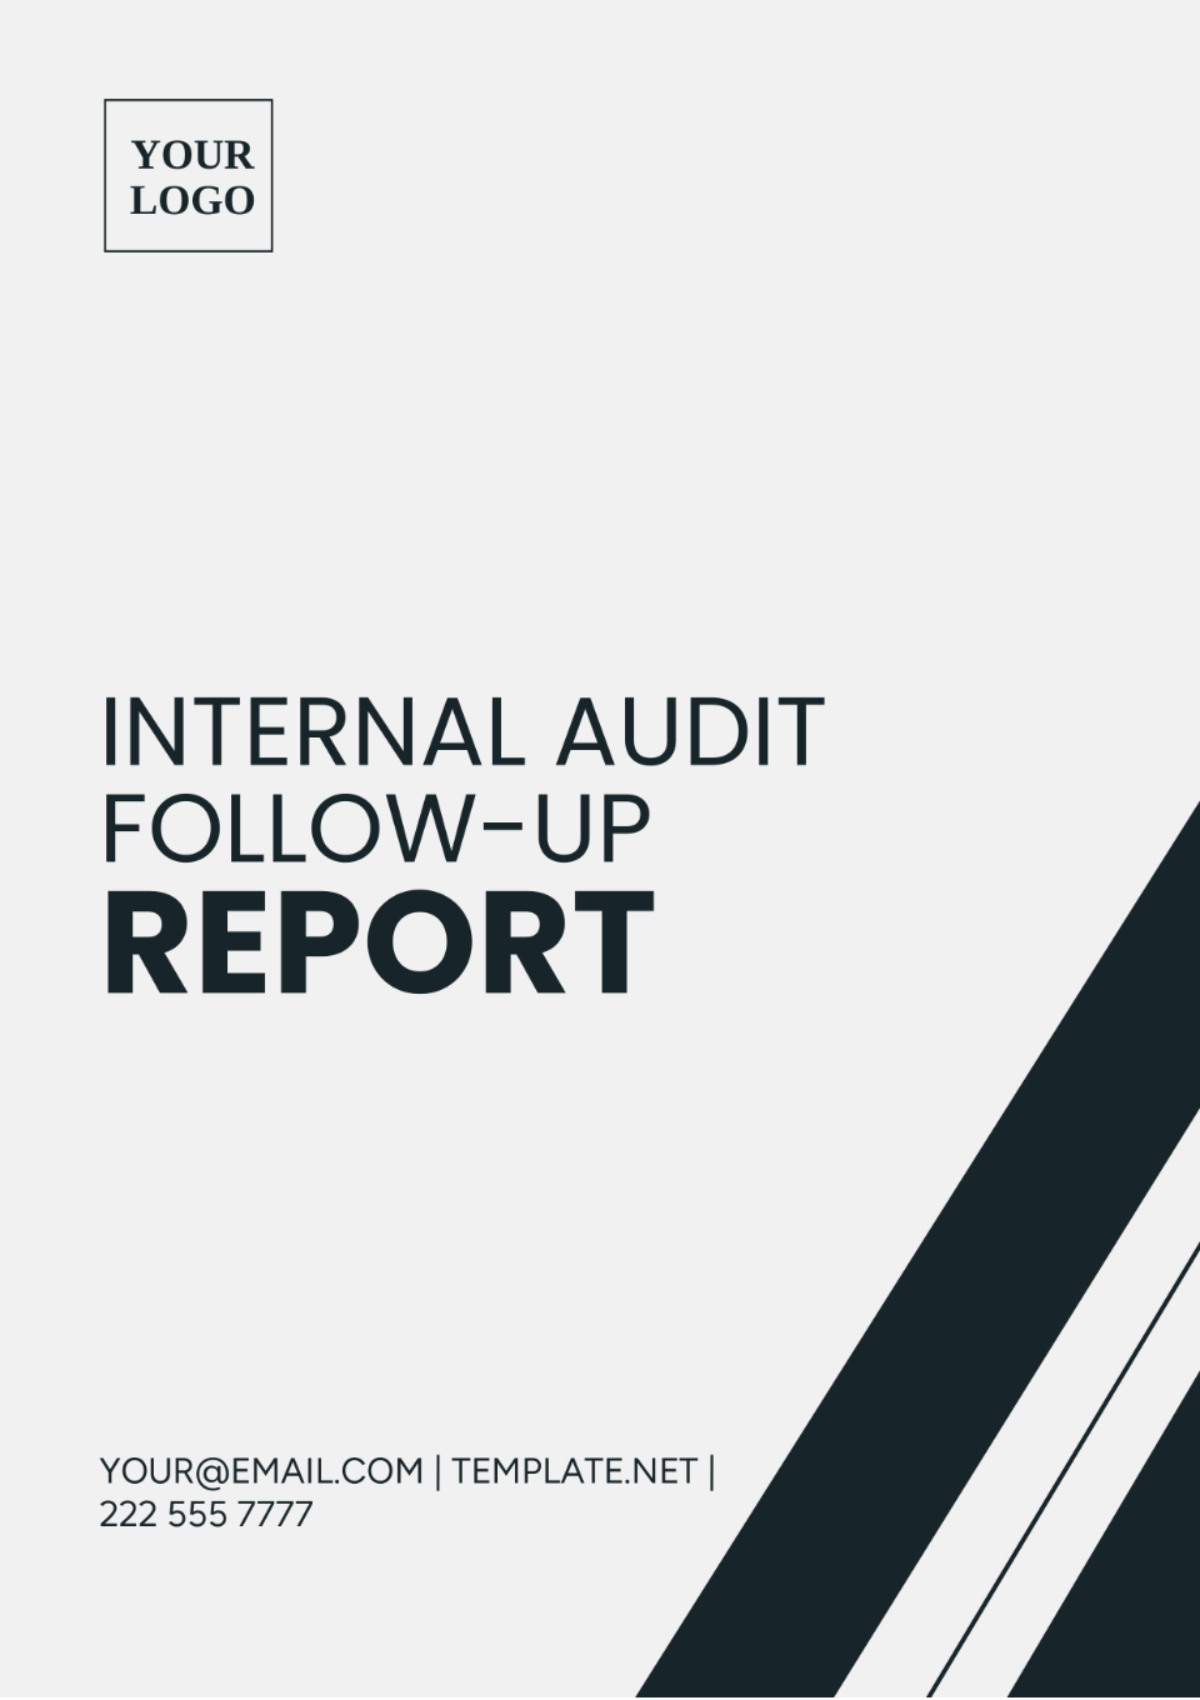 Internal Audit Follow-Up Report Template